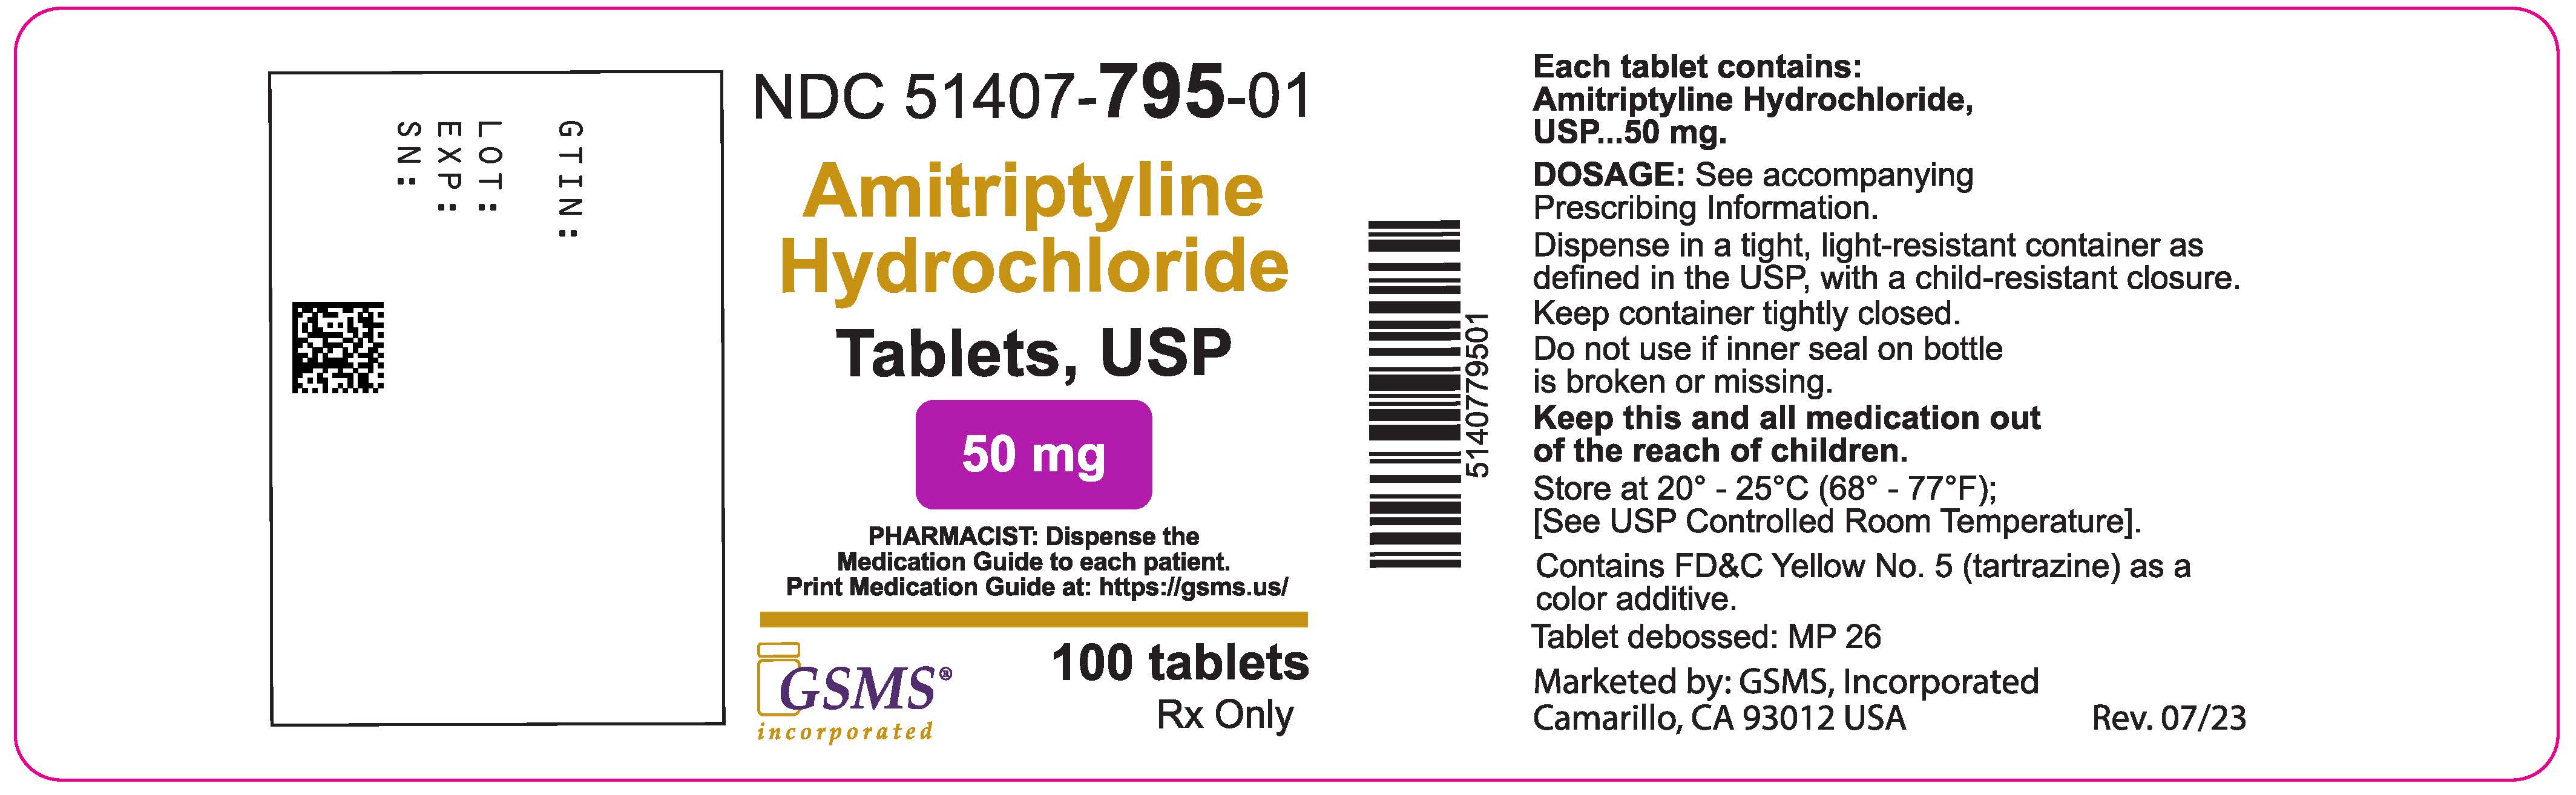 Amitriptyline Hydrochloride Tablets Usp